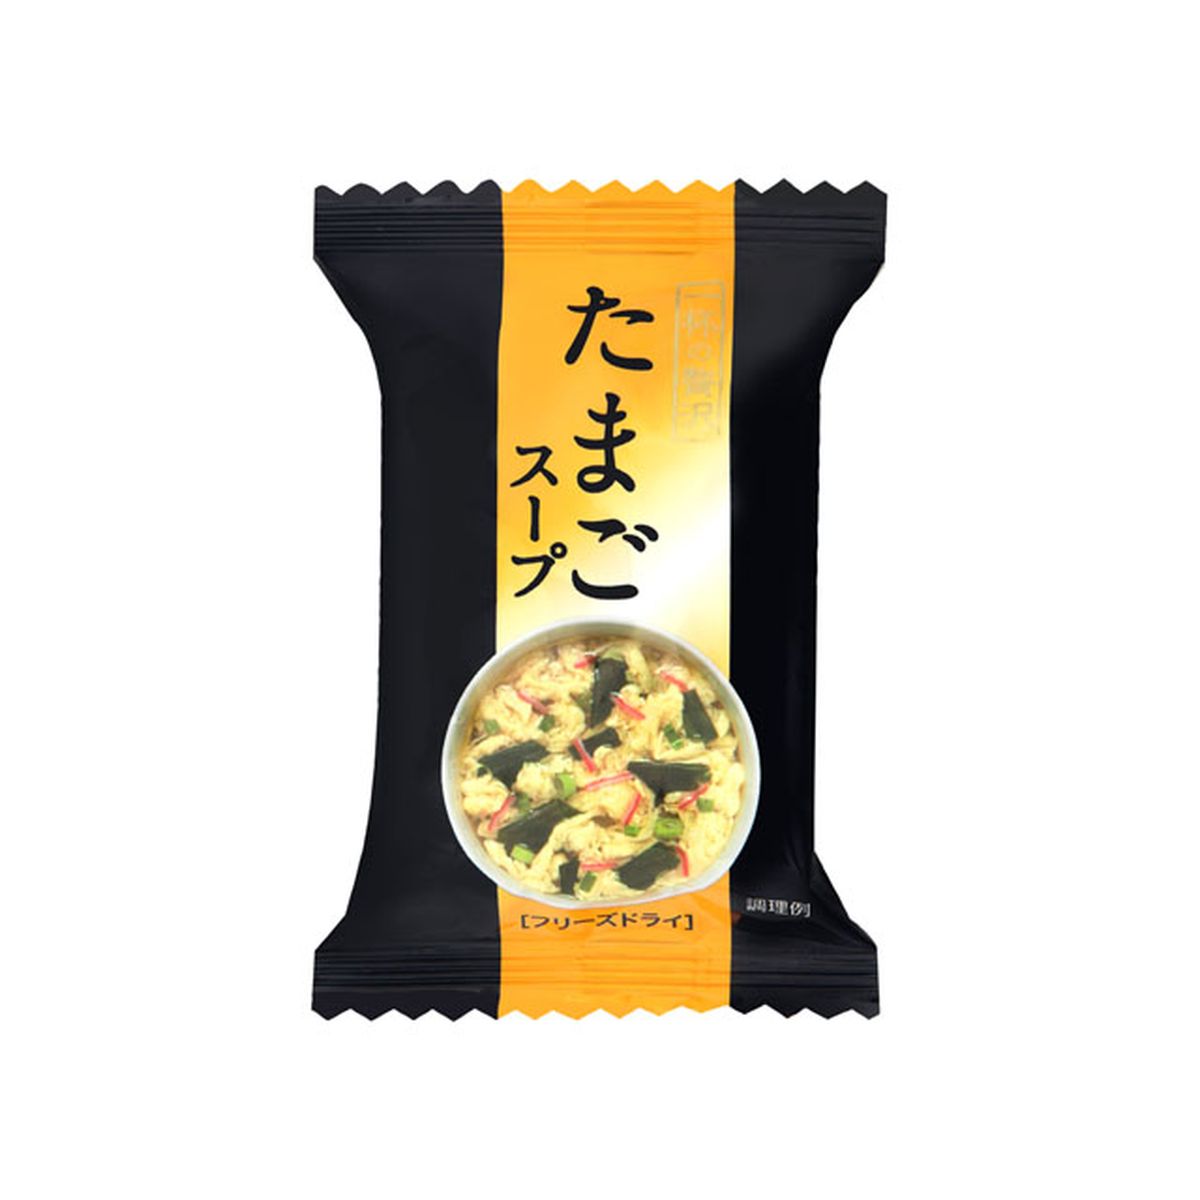 【10個入り】キリン協和フーズ 一杯の贅沢 たまごスープ 8g